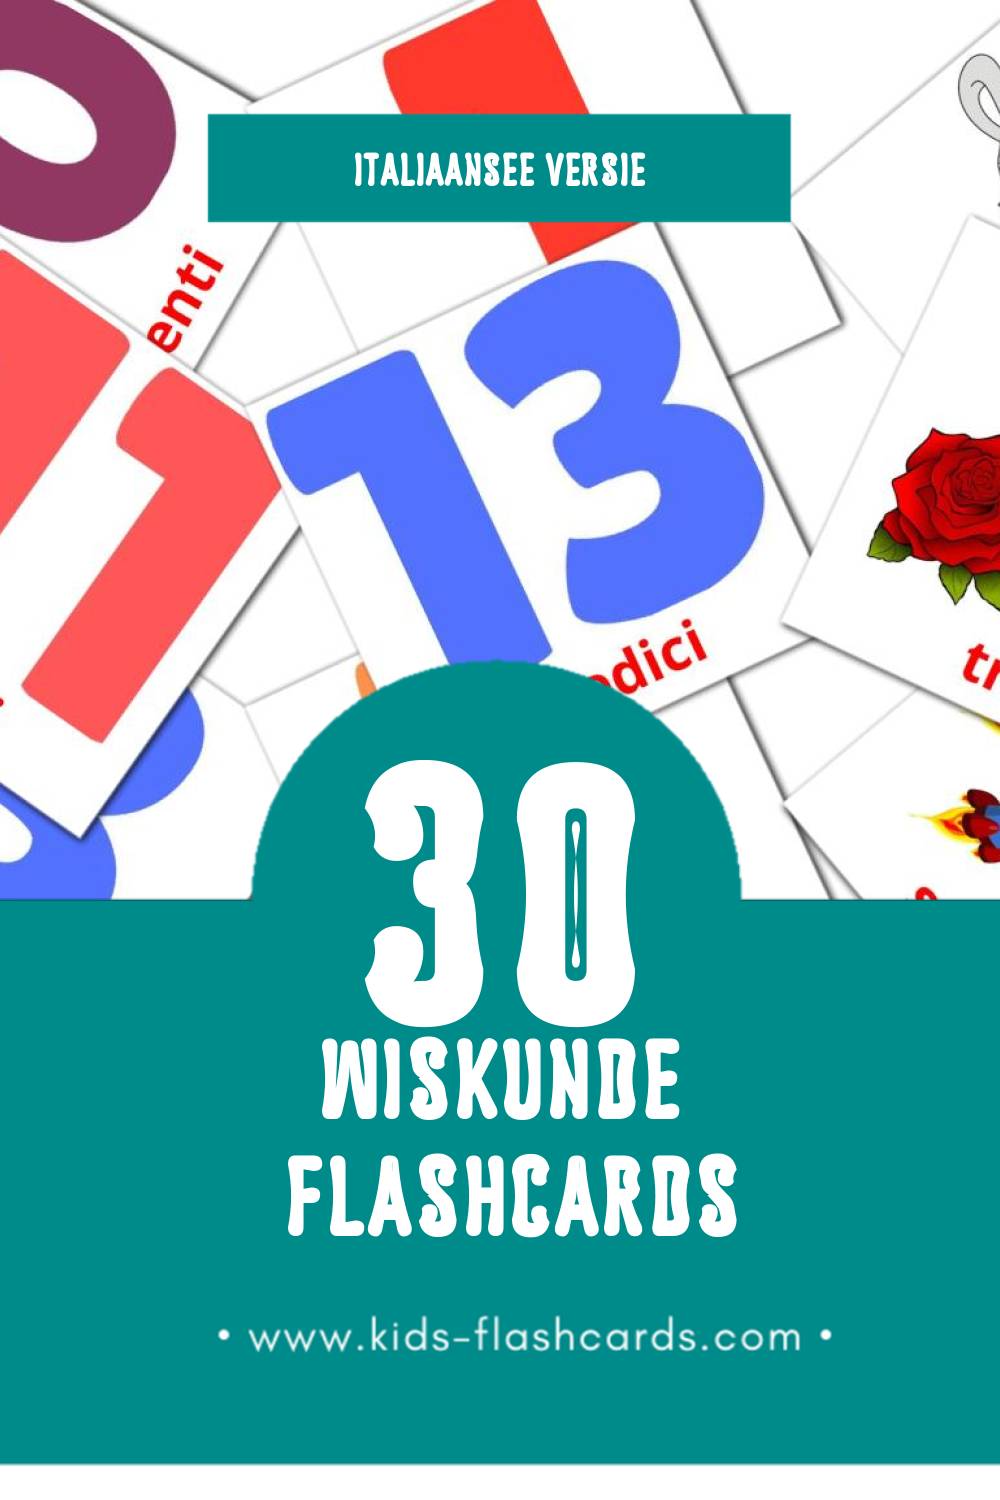 Visuele Matematica Flashcards voor Kleuters (30 kaarten in het Italiaanse)